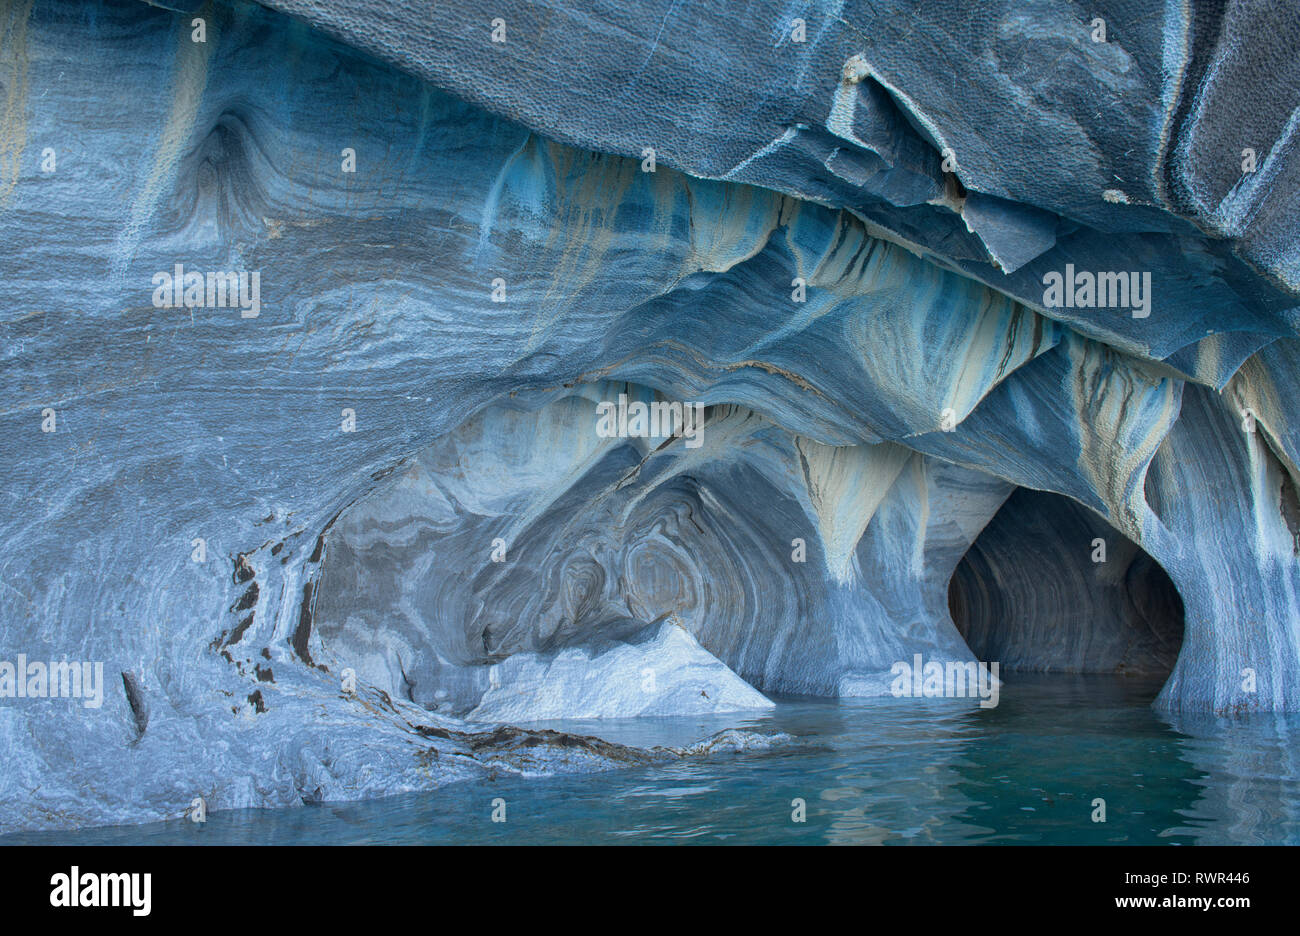 La escultura y la erosión del viento dentro de las Cavernas de Mármol (Capilla de Mármol), Río Tranquilo, Aysén, Patagonia, Chile Foto de stock